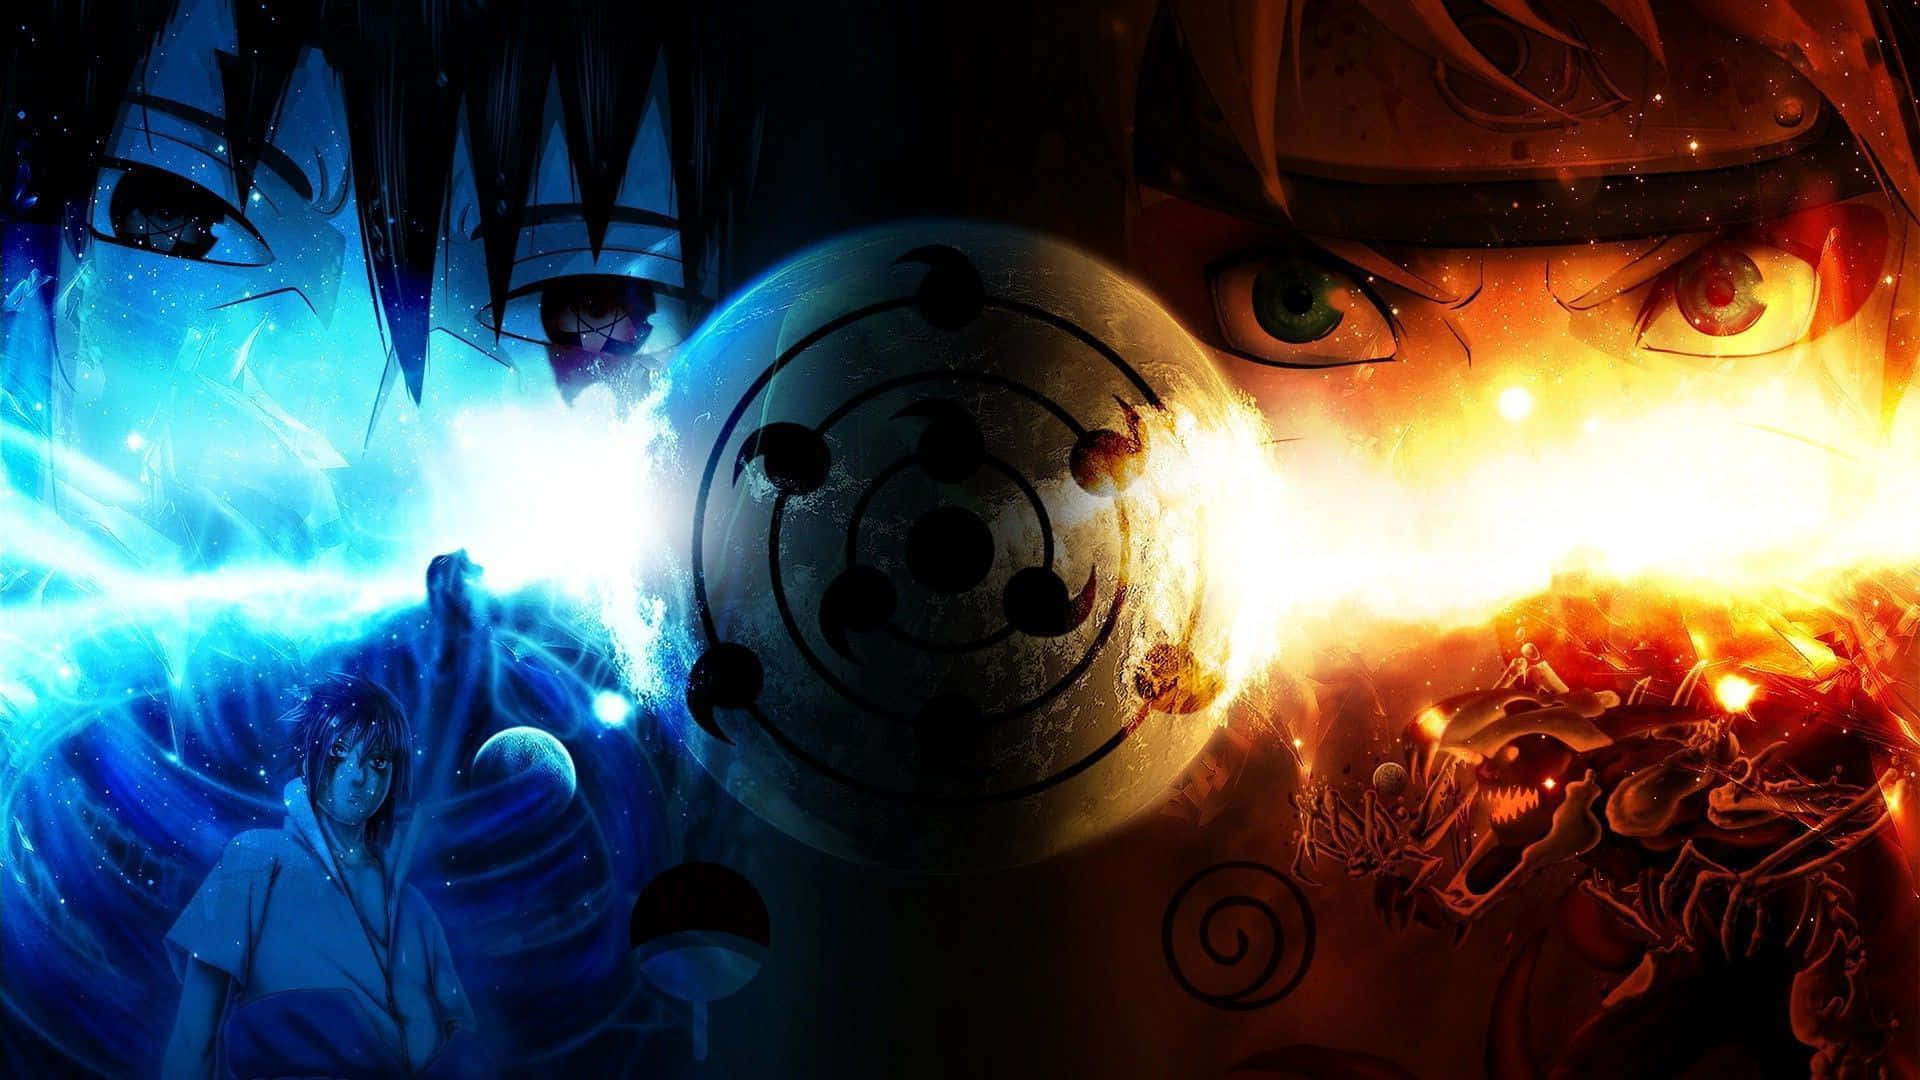 Naruto Neon hình nền miễn phí: Những chất liệu neon tuyệt vời được hiện thực hóa trong chiếc hình nền Naruto nổi bật. Cảm nhận sức mạnh và năng lượng vô tận của nhân vật Naruta trong đêm đen được phủ lên những đường nét neon sáng màu. Hãy lựa chọn hình nền này và đắm mình vào một thế giới hoàn toàn khác biệt.